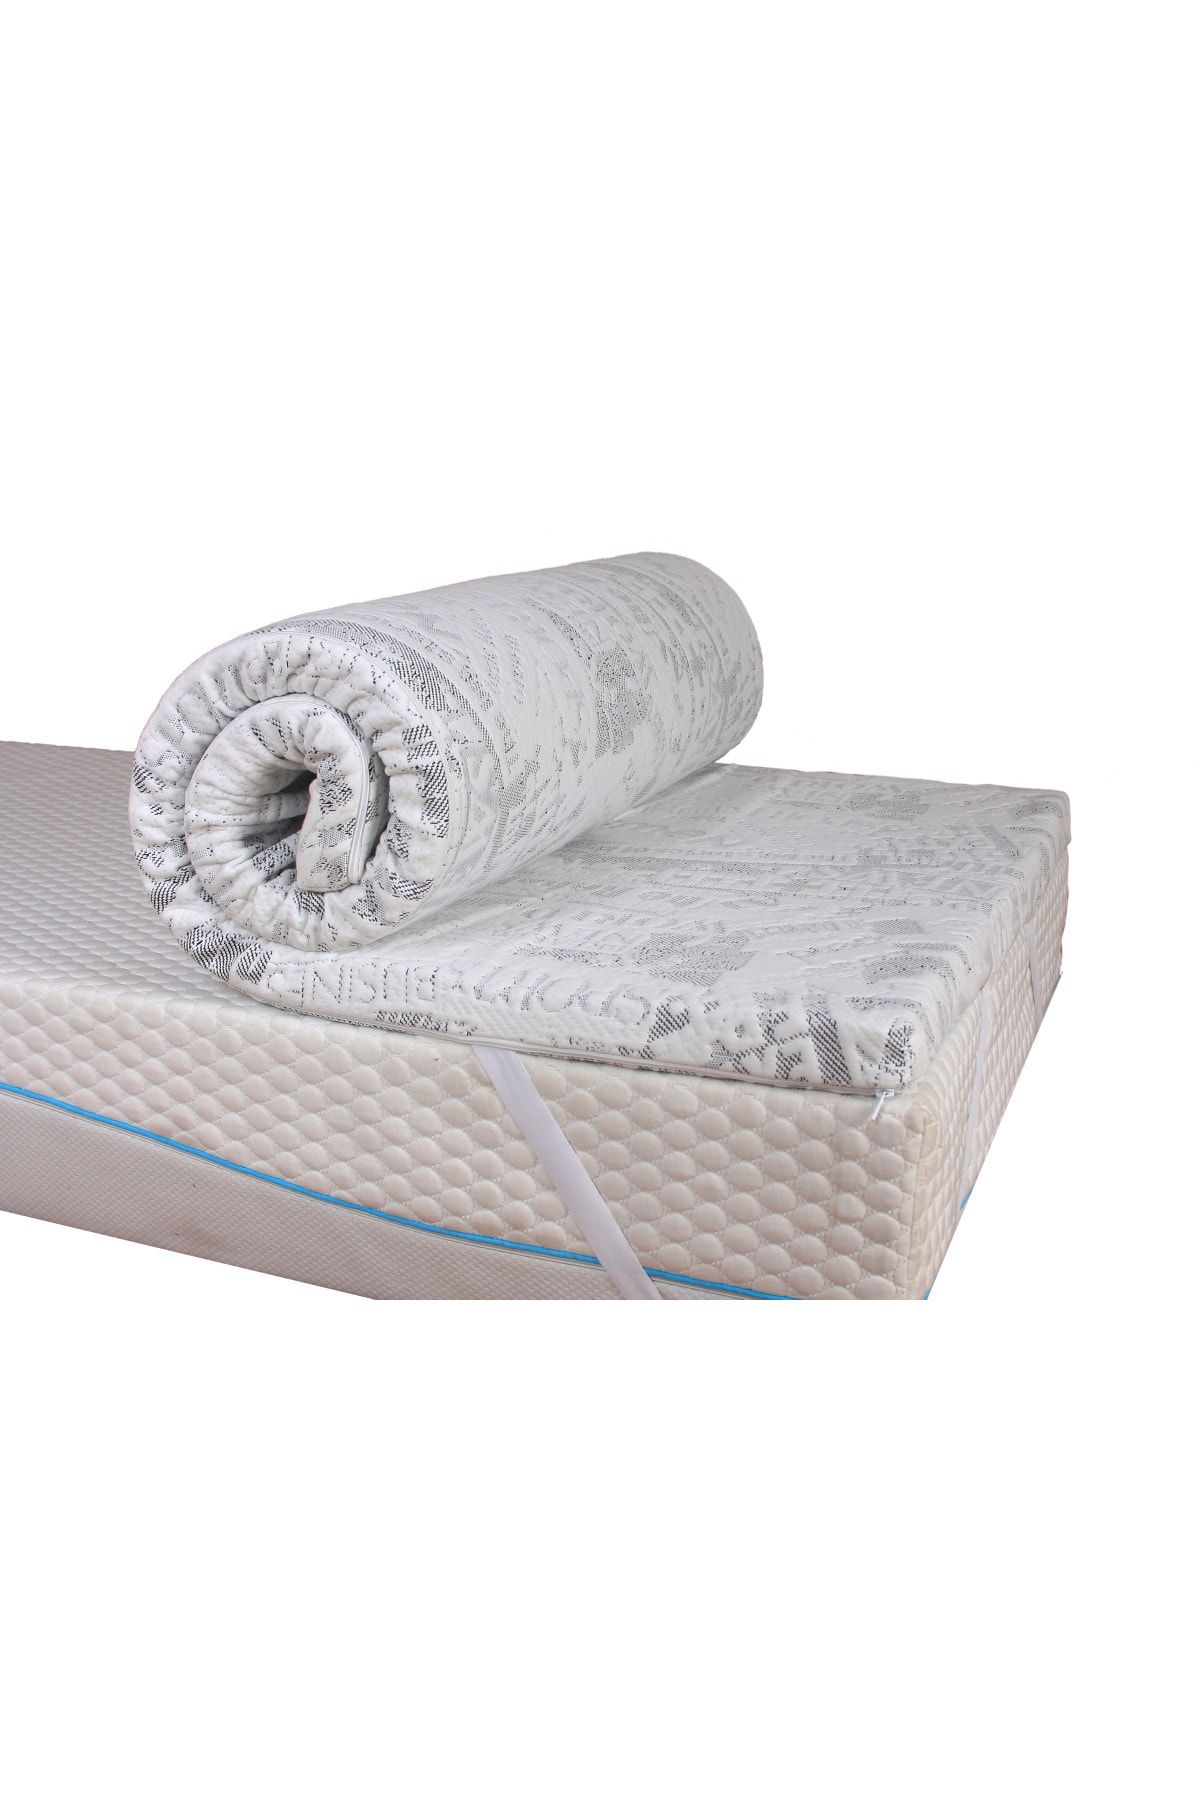 2Mhome Beyaz Yıkanabilir Lastikli Şilteli Yatak Pedi Fiyatı, Yorumları